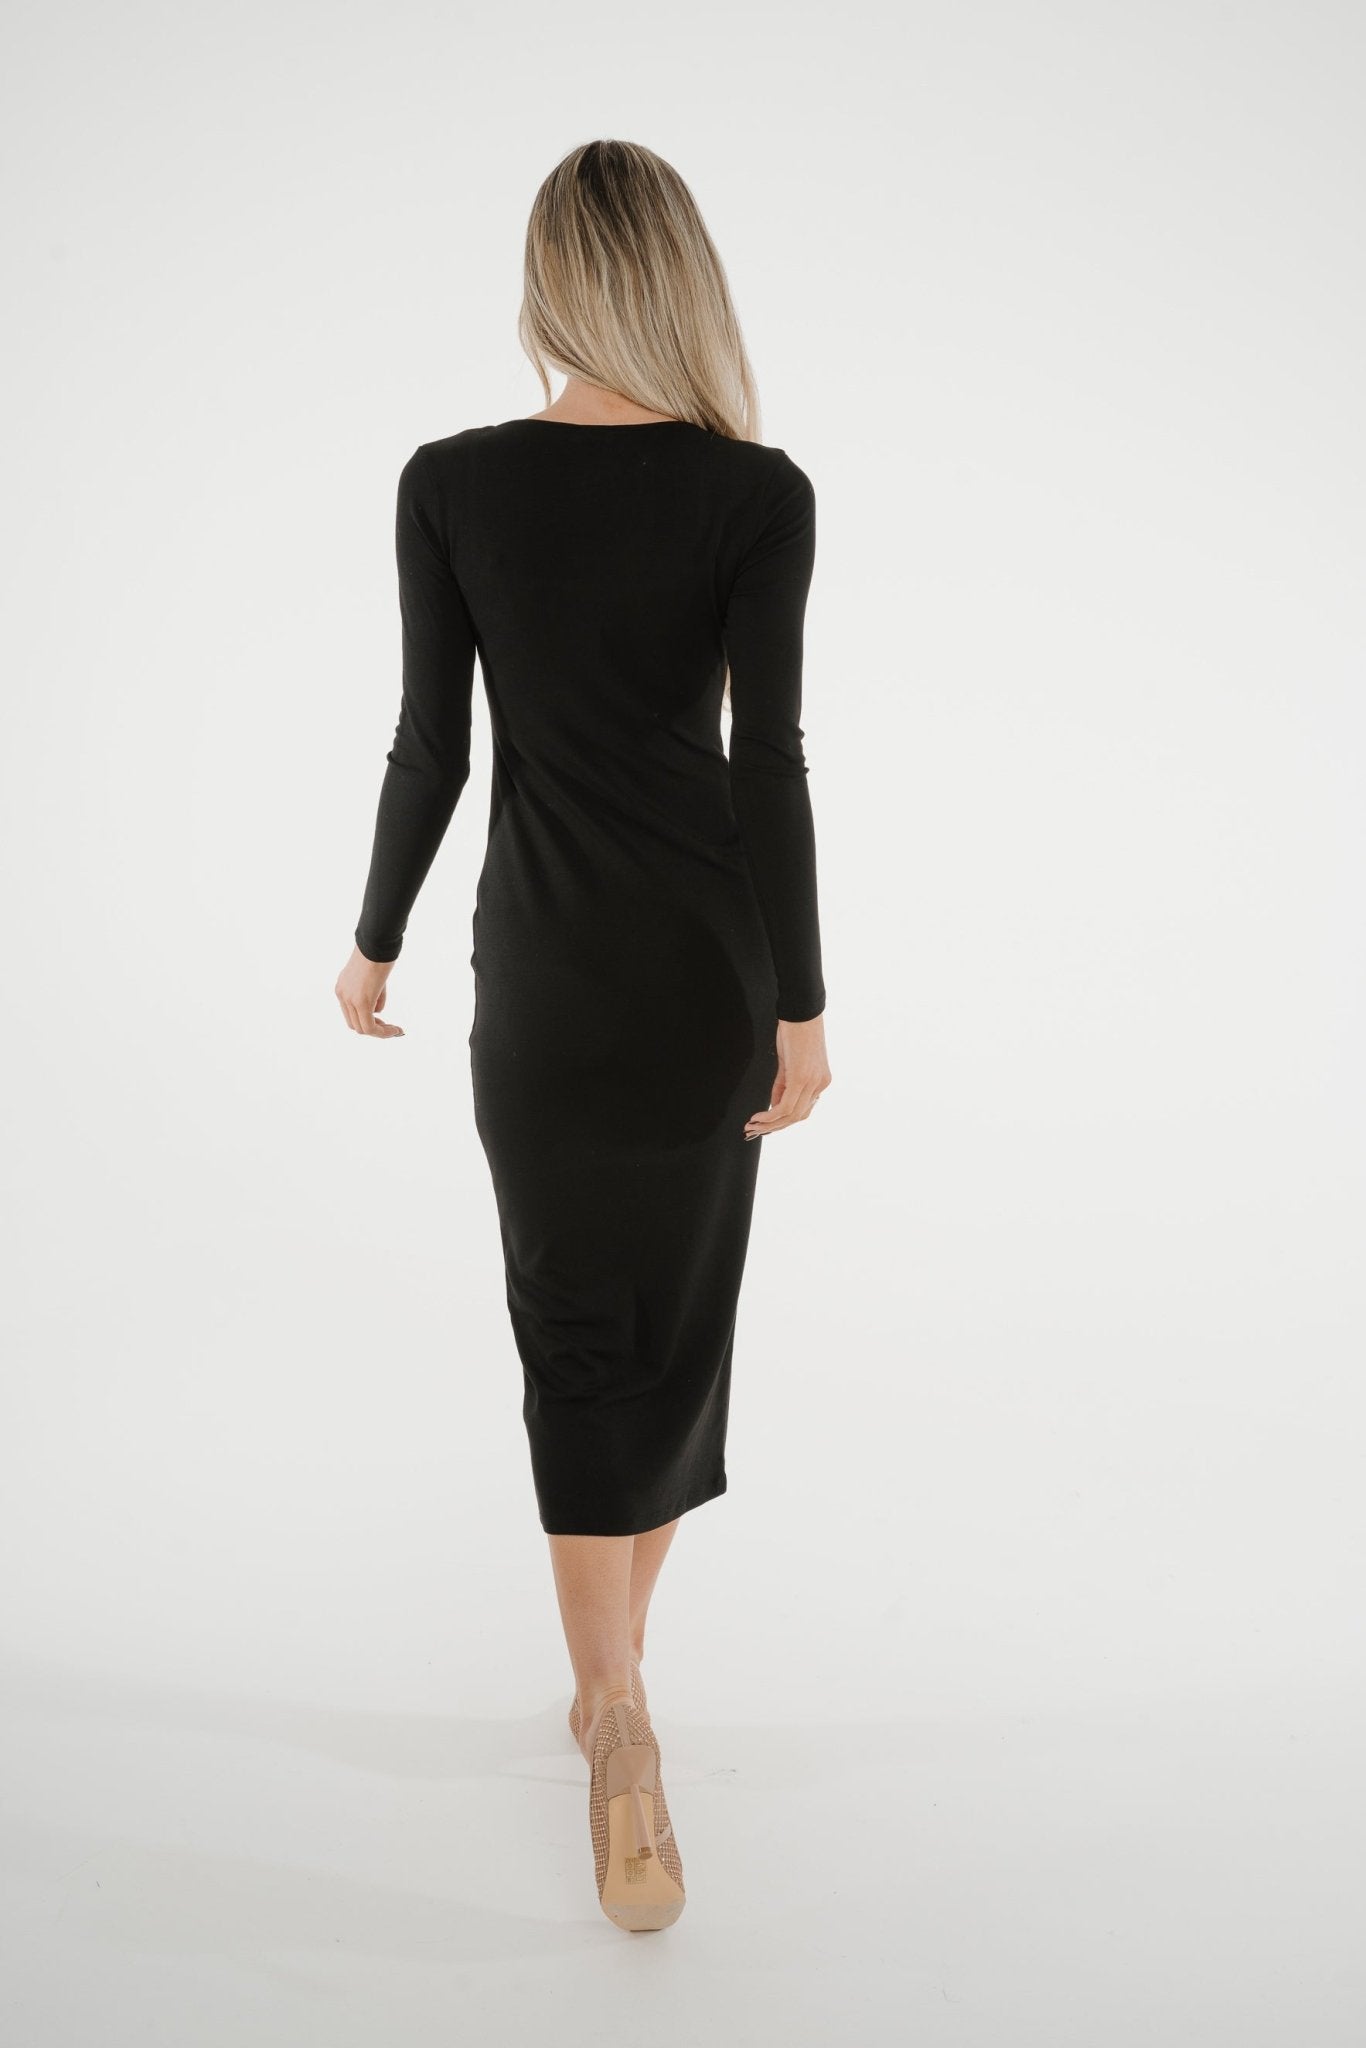 Kate Midi Dress In Black - The Walk in Wardrobe